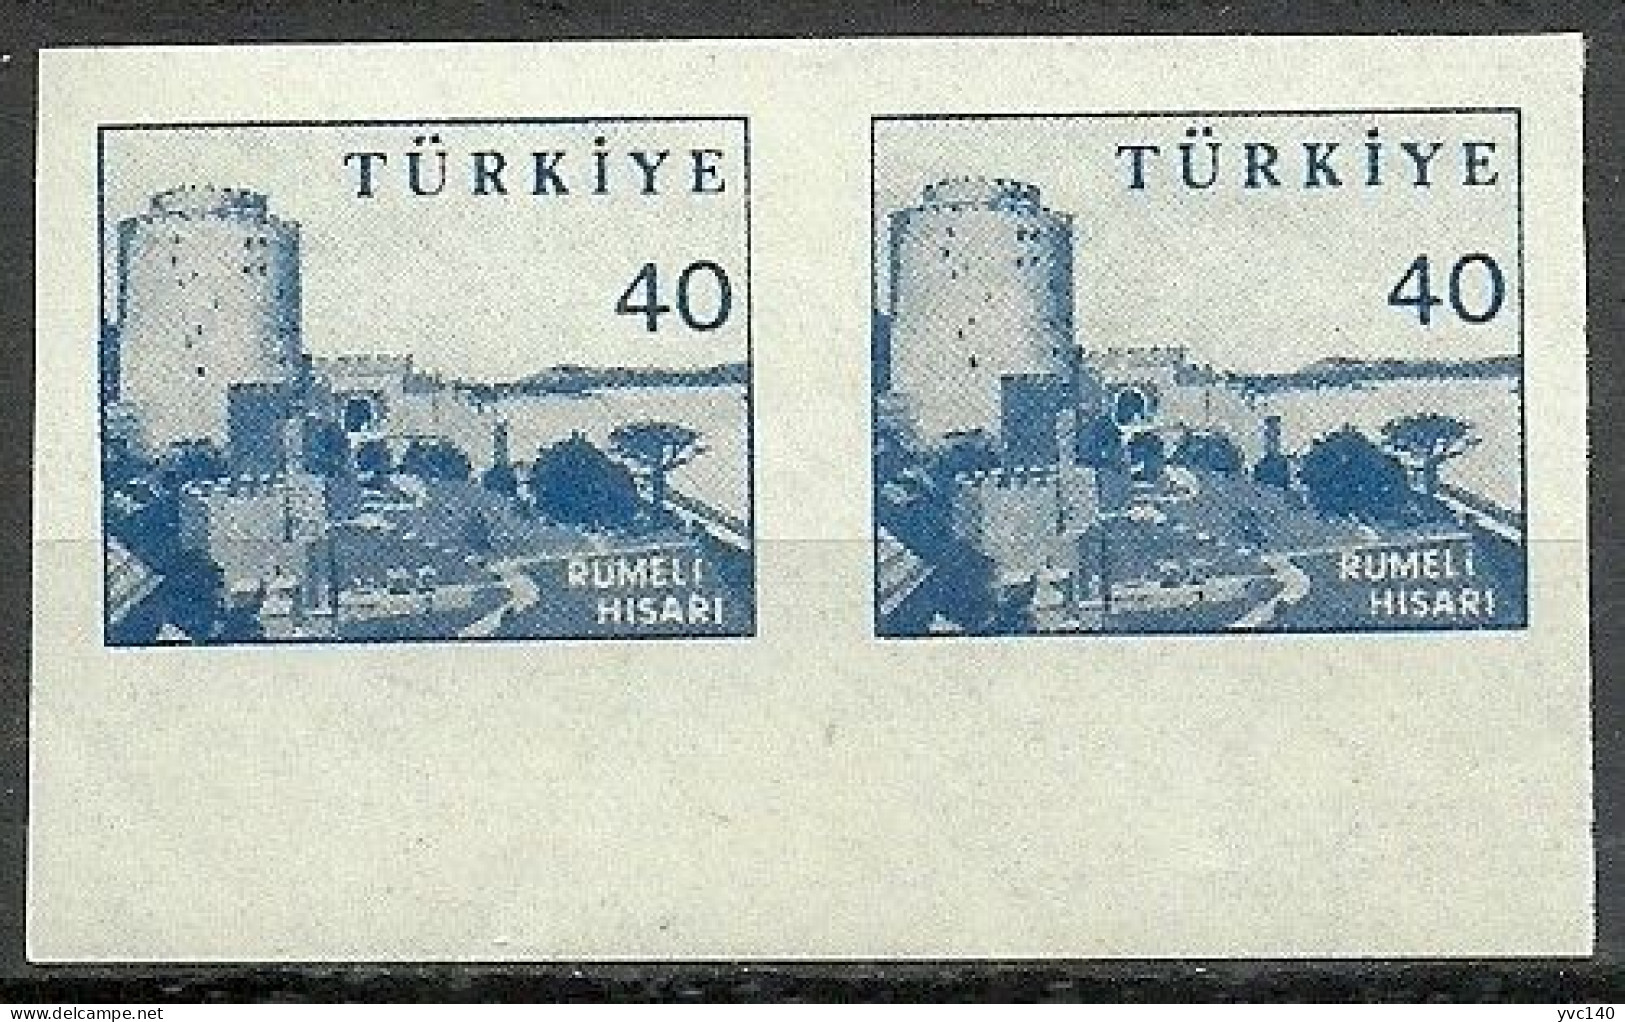 Turkey; 1959 Pictorial Postage Stamp 40 K. ERROR "Imperf. Pair" - Neufs